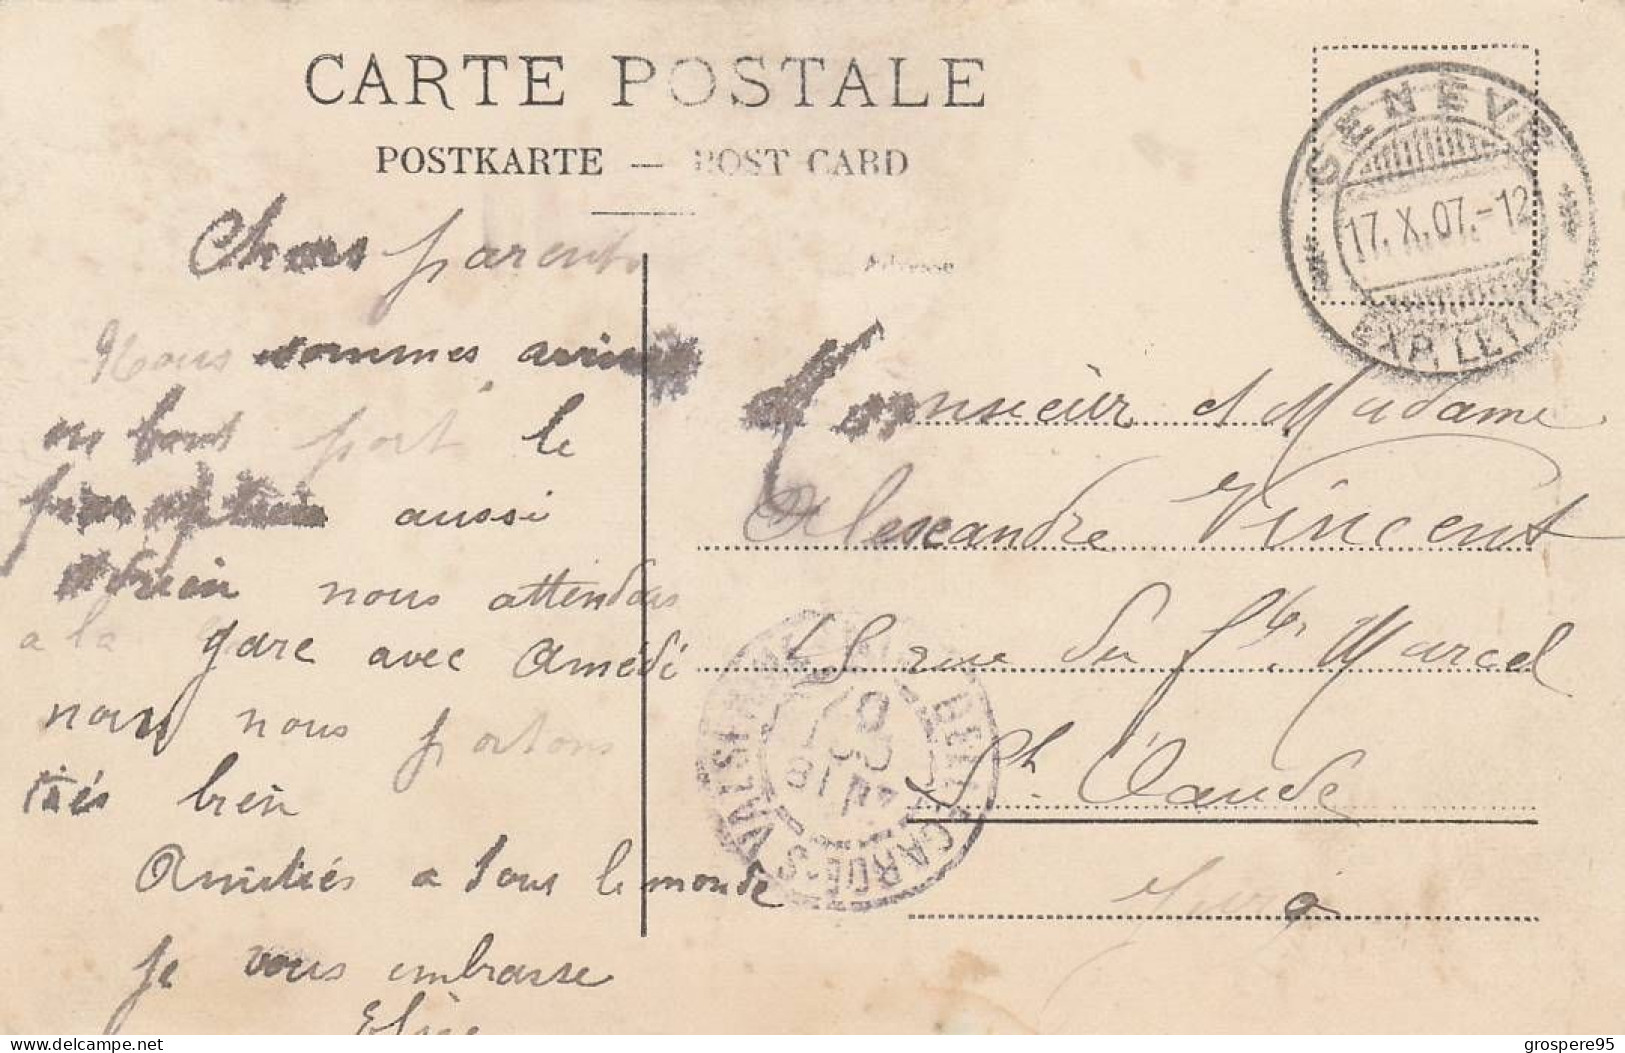 GENEVE CLINIQUE CHIRURGICALE DU PROFESSEUR DOCTEUR AUGUSTE REVERDIN 112 RUE DE CAROUGE 1907 - Carouge